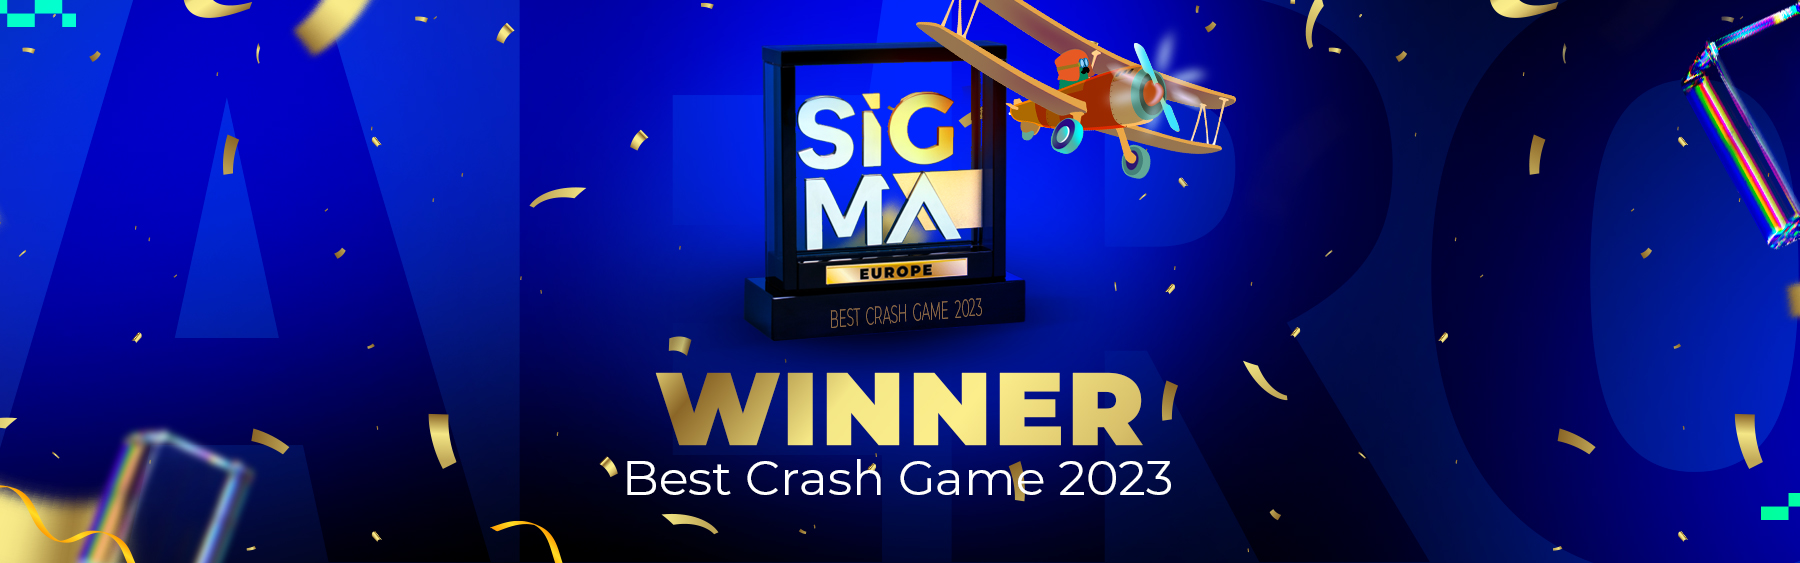 Upgaming's AERO - the Best Crash Game of 2023 at SiGMA Europe Awards